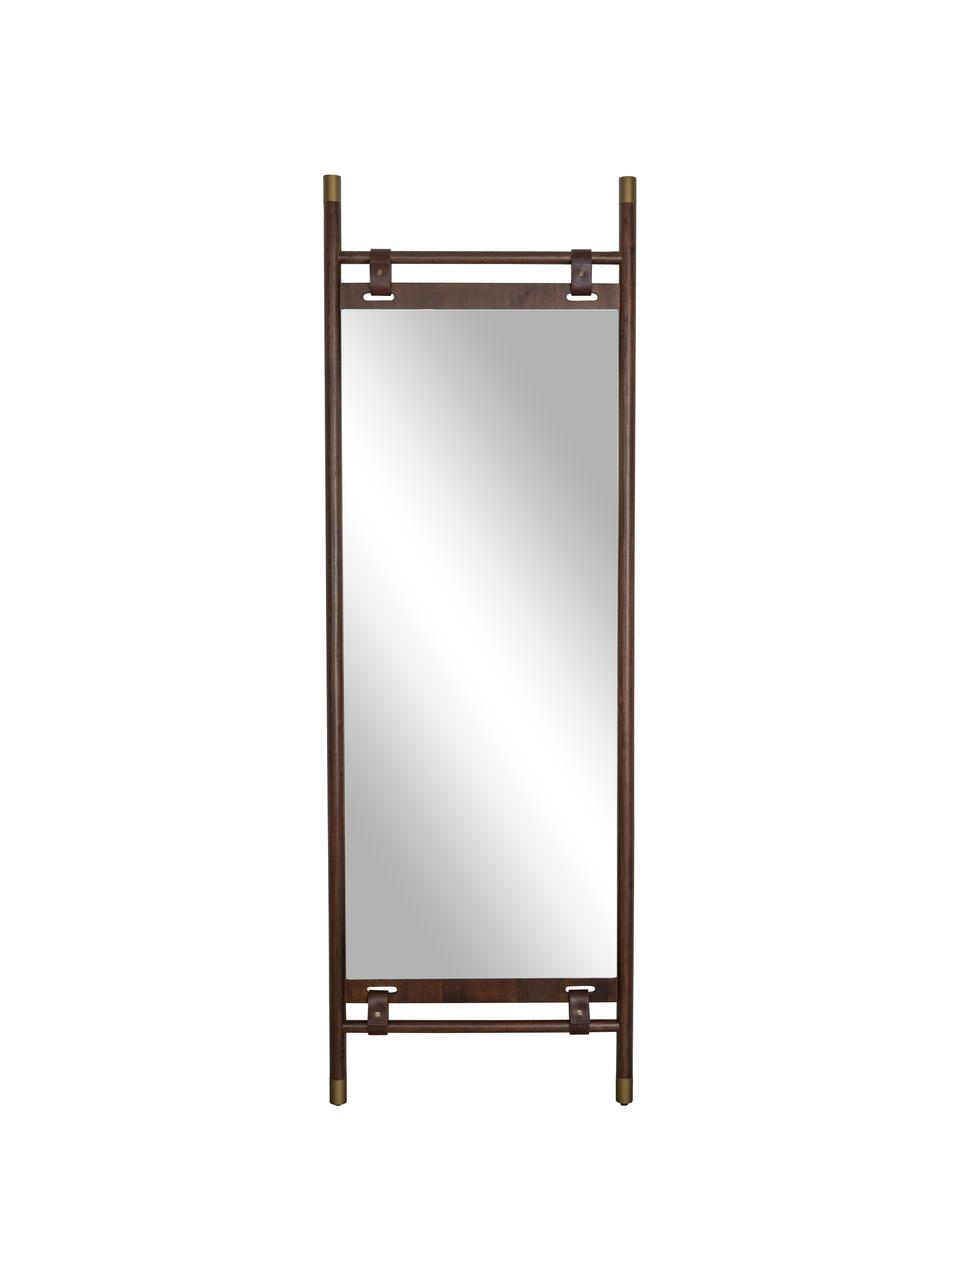 Eckiger Anlehnspiegel Riva mit braunem Holzrahmen und Lederriemen, Rahmen: Buchenholz, Spiegelfläche: Spiegelglas, Dunkelbraun, B 60 x H 180 cm